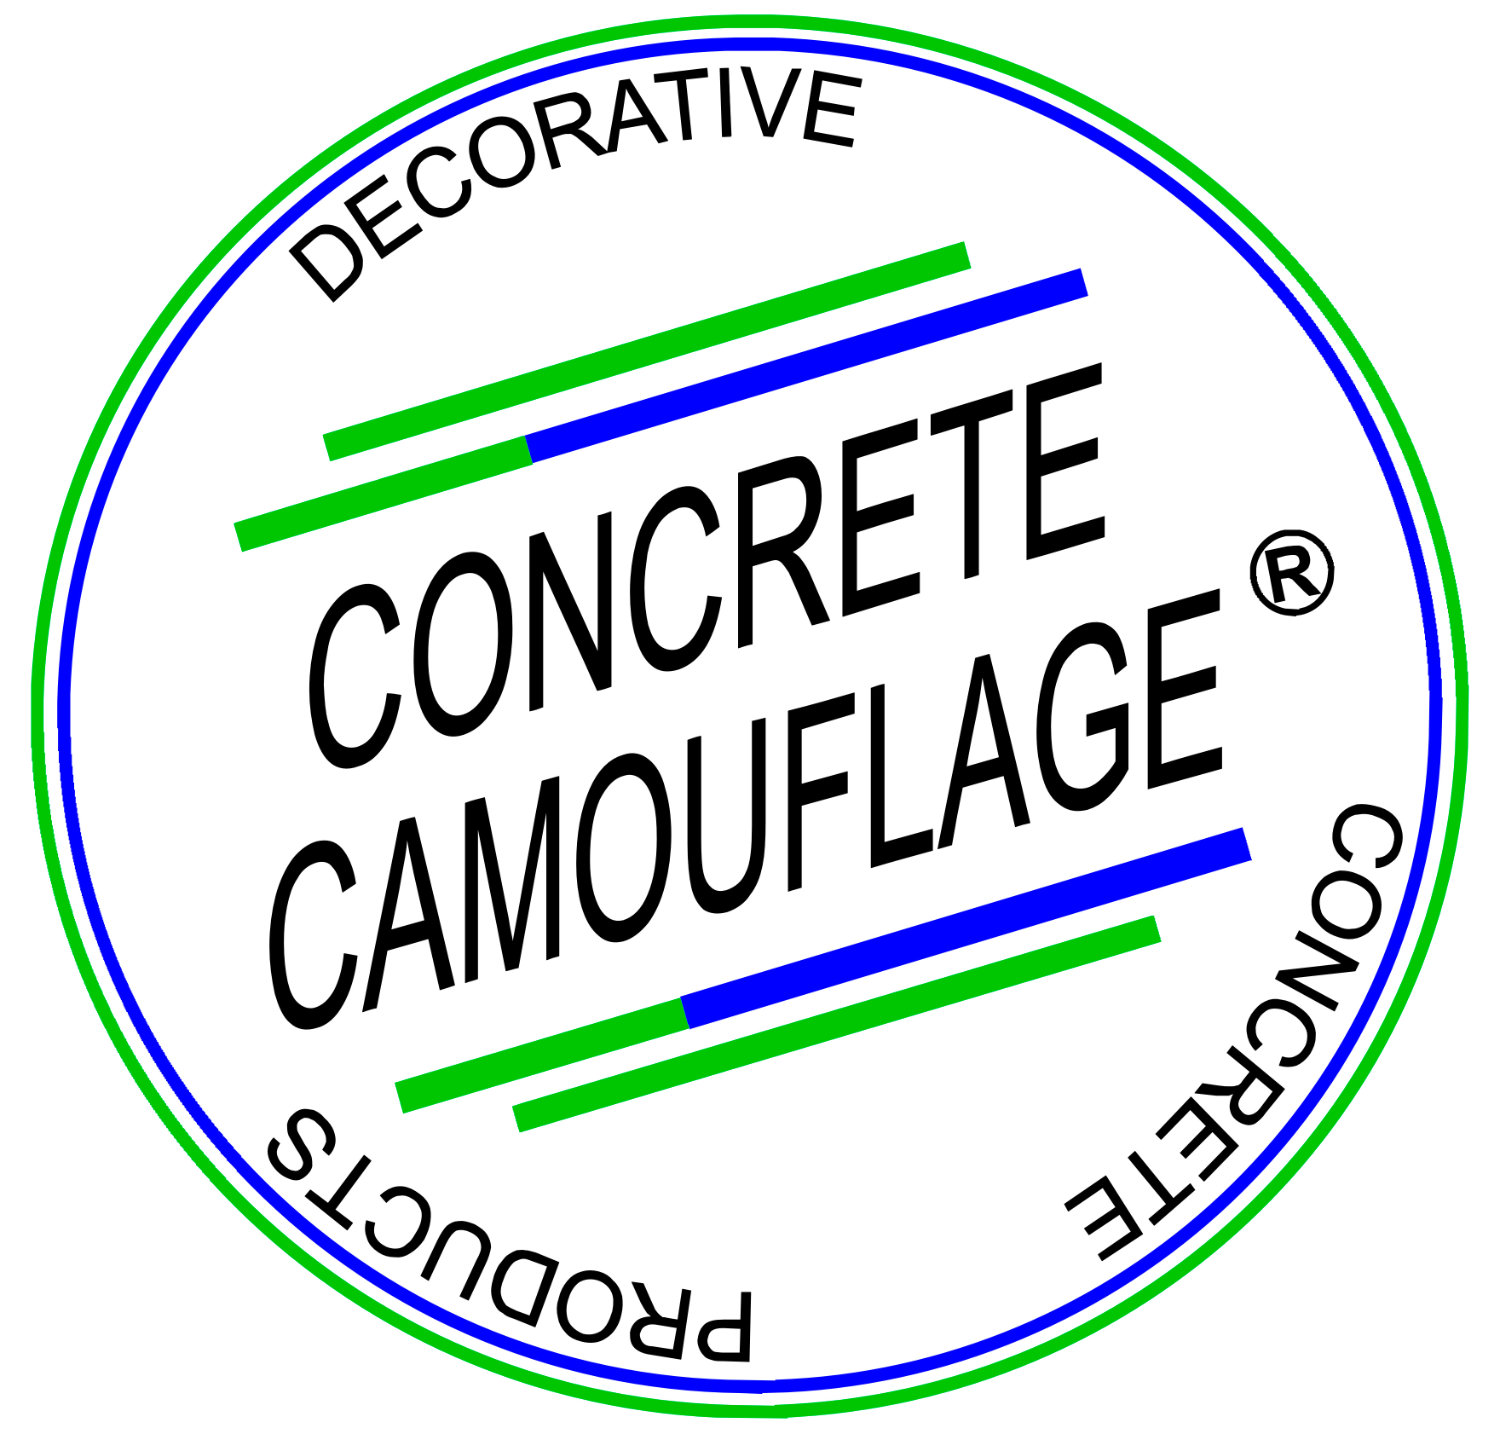 Concretecamouflage